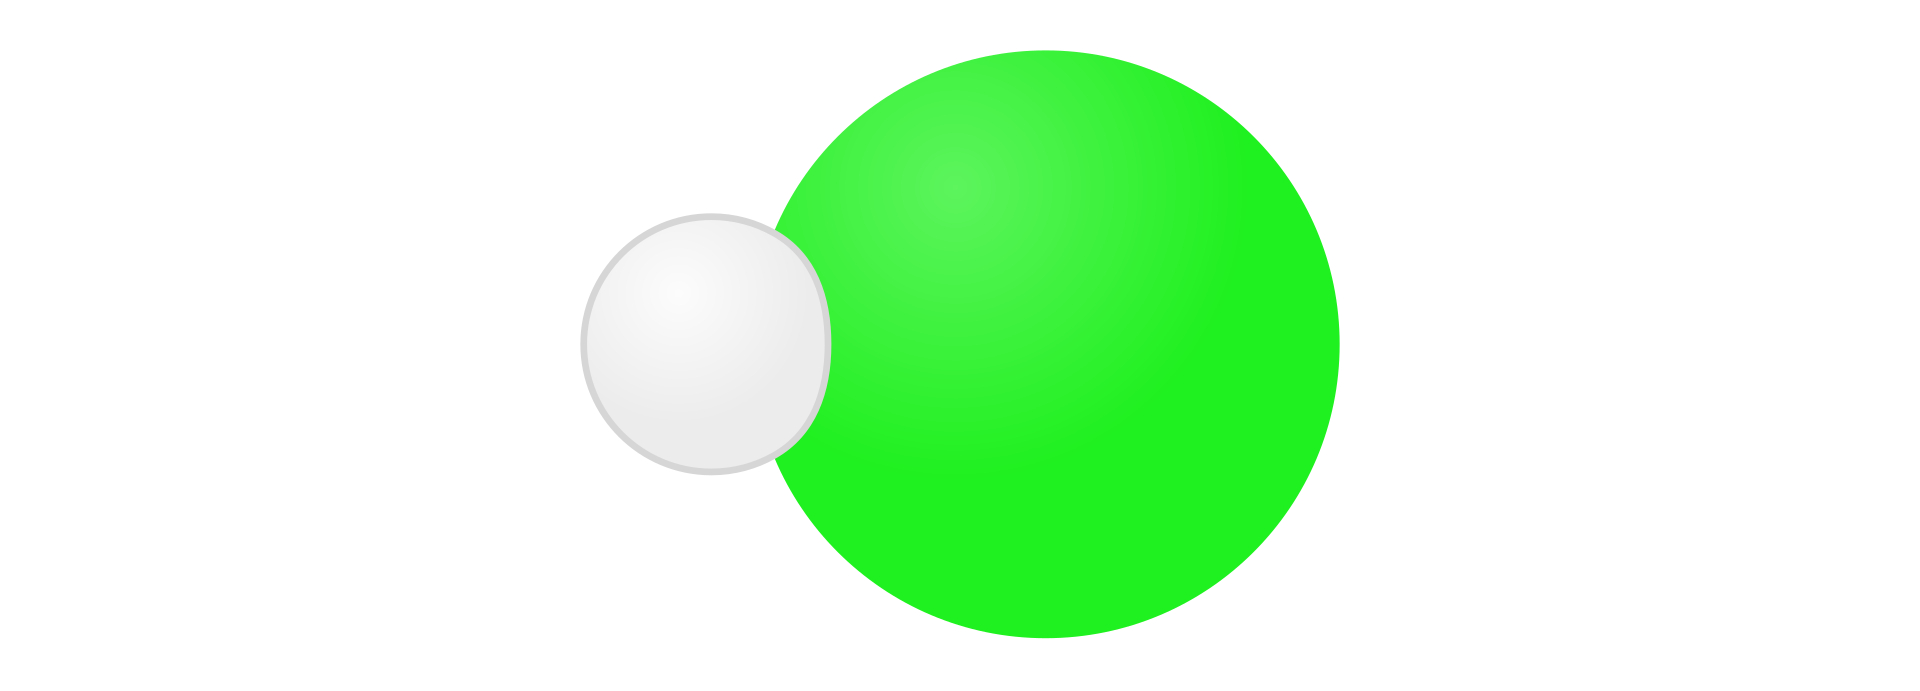 Ilustracja przedstawia model cząsteczki chlorowodoru składającej się z atomu wodoru symbolizowanego małym białym kołem po lewej stronie oraz połączonego z nim atomu chloru symbolizowanego dużym zielonym kołem po prawej stronie.